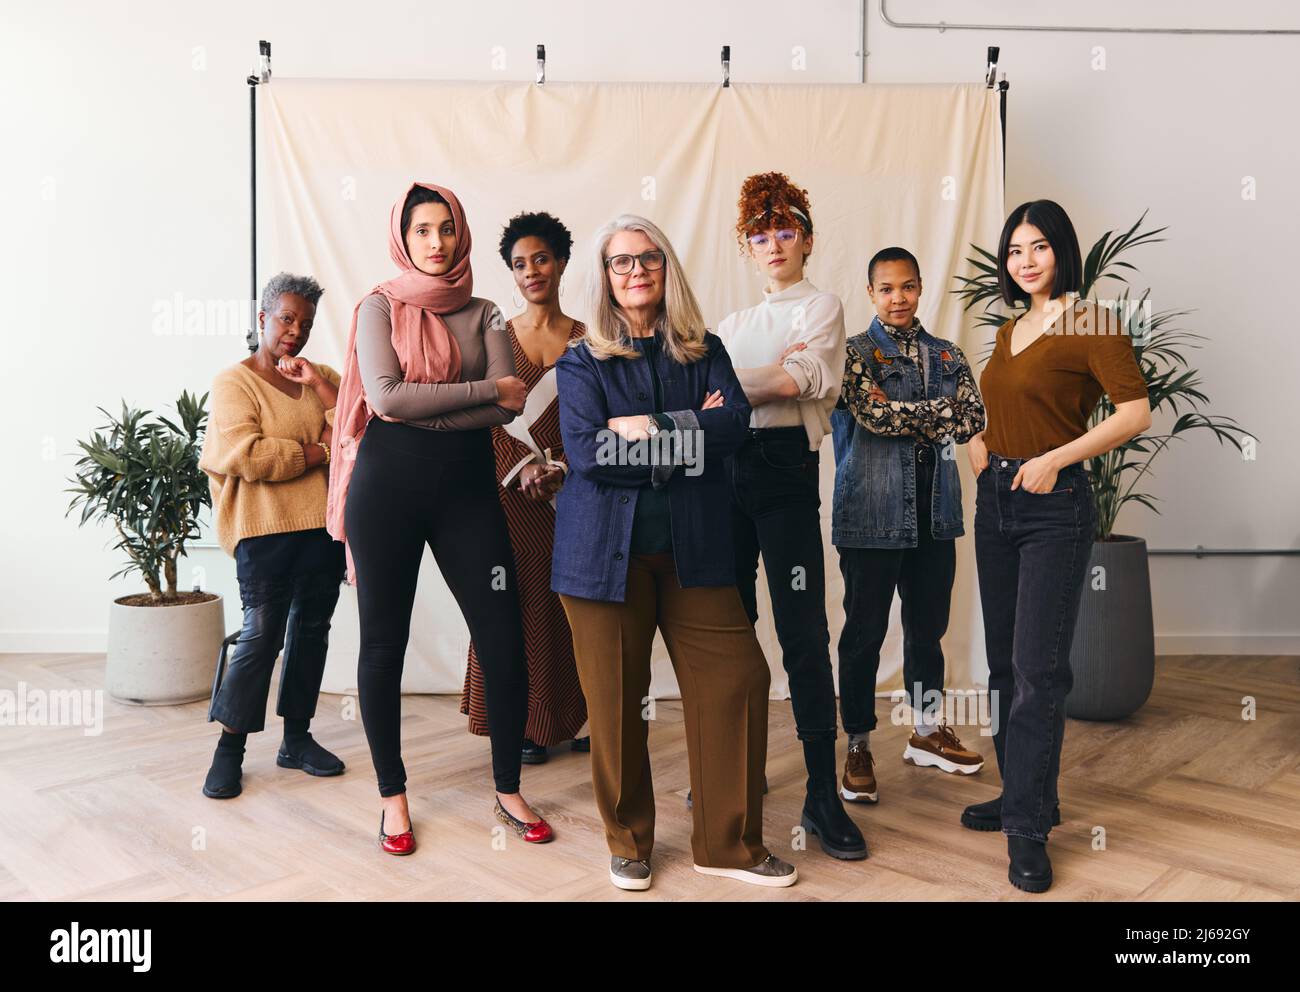 Retrato del Día Internacional de la Mujer de mujeres multiétnicas de edades mixtas que miran con confianza hacia la cámara Foto de stock